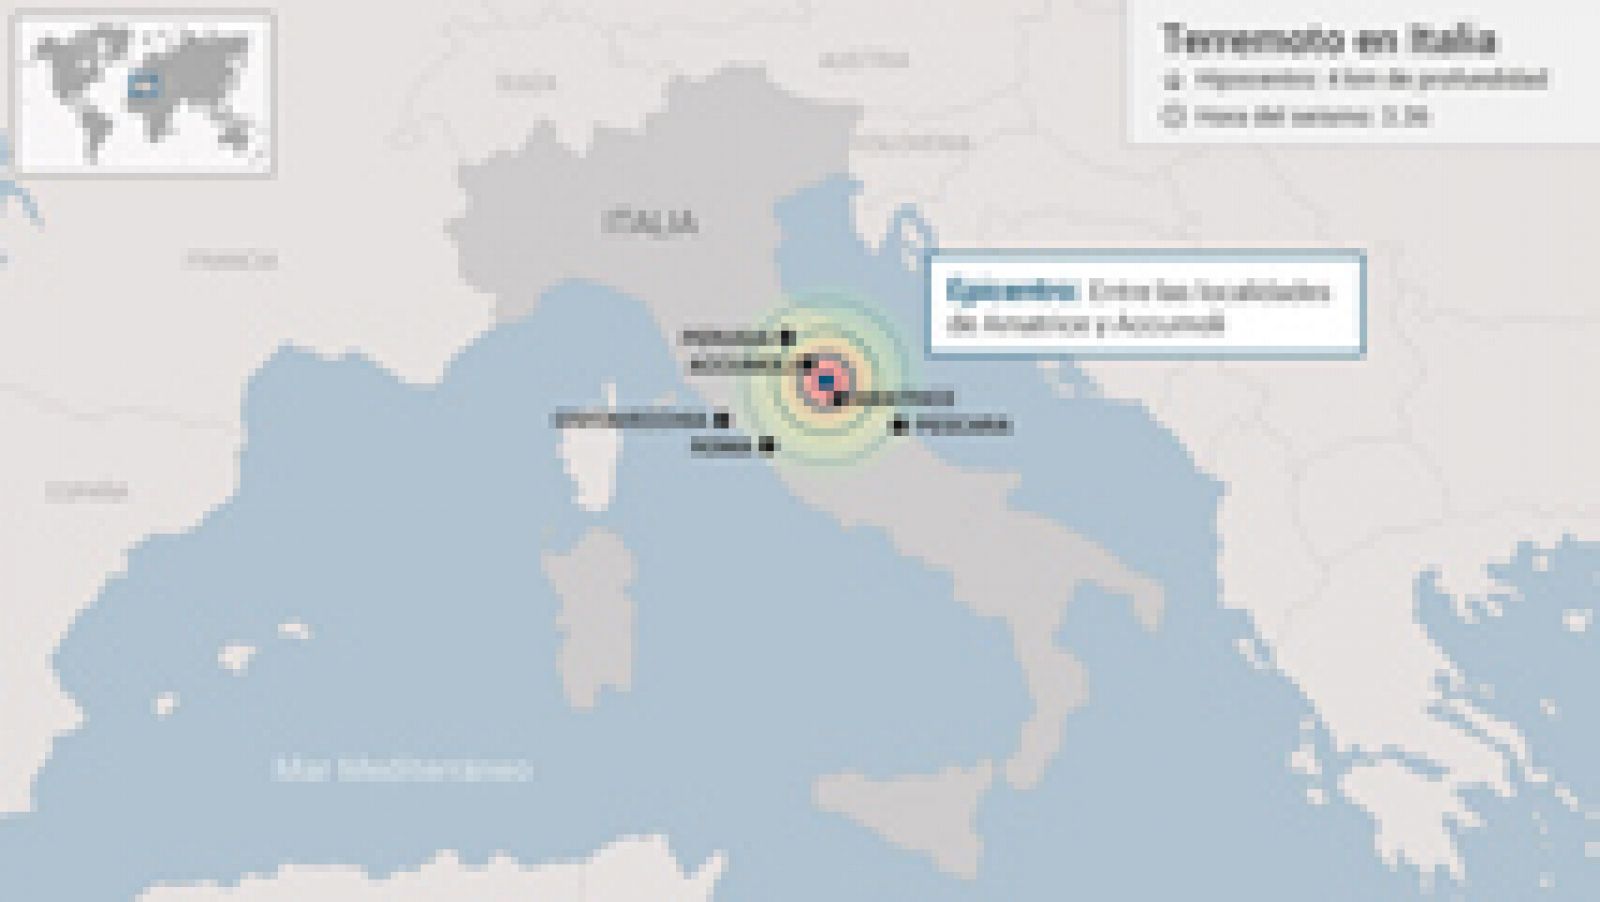 Italia  sufre la presin de tres placas tectnicas que empujan en direcciones opuestas